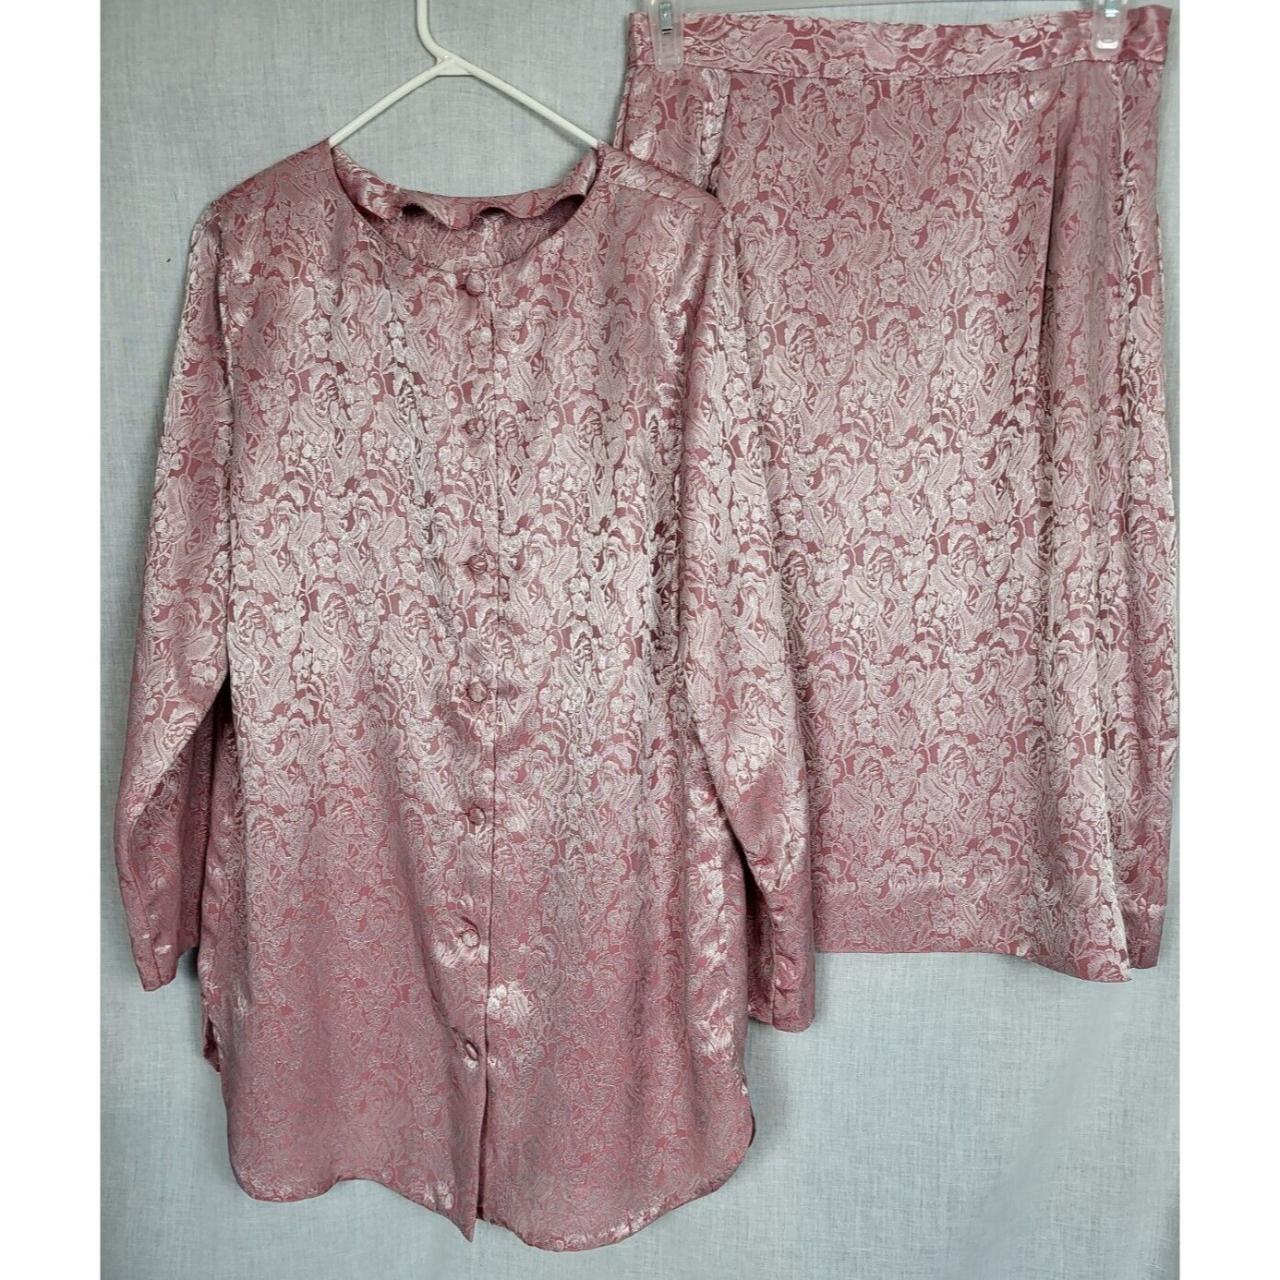 Vintage 80s Pink Floral Dress Skirt 2-piece... - Depop